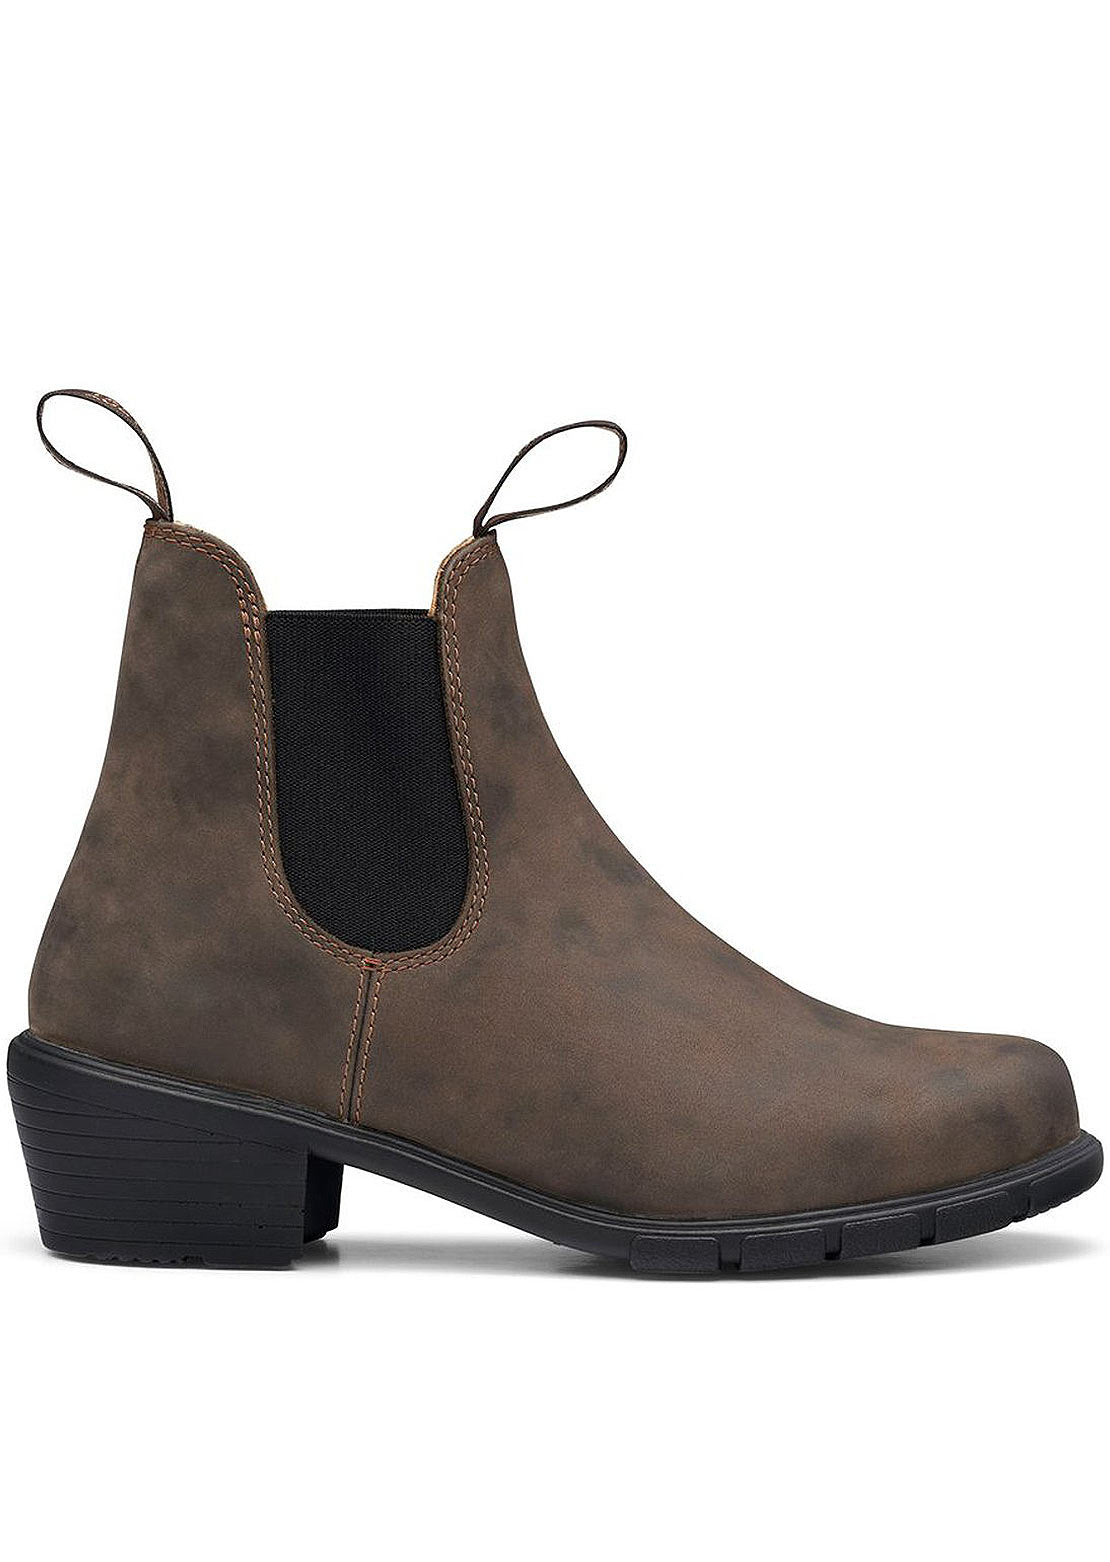 Blundstone Women’s 1677 Heel Boots Rustic Brown